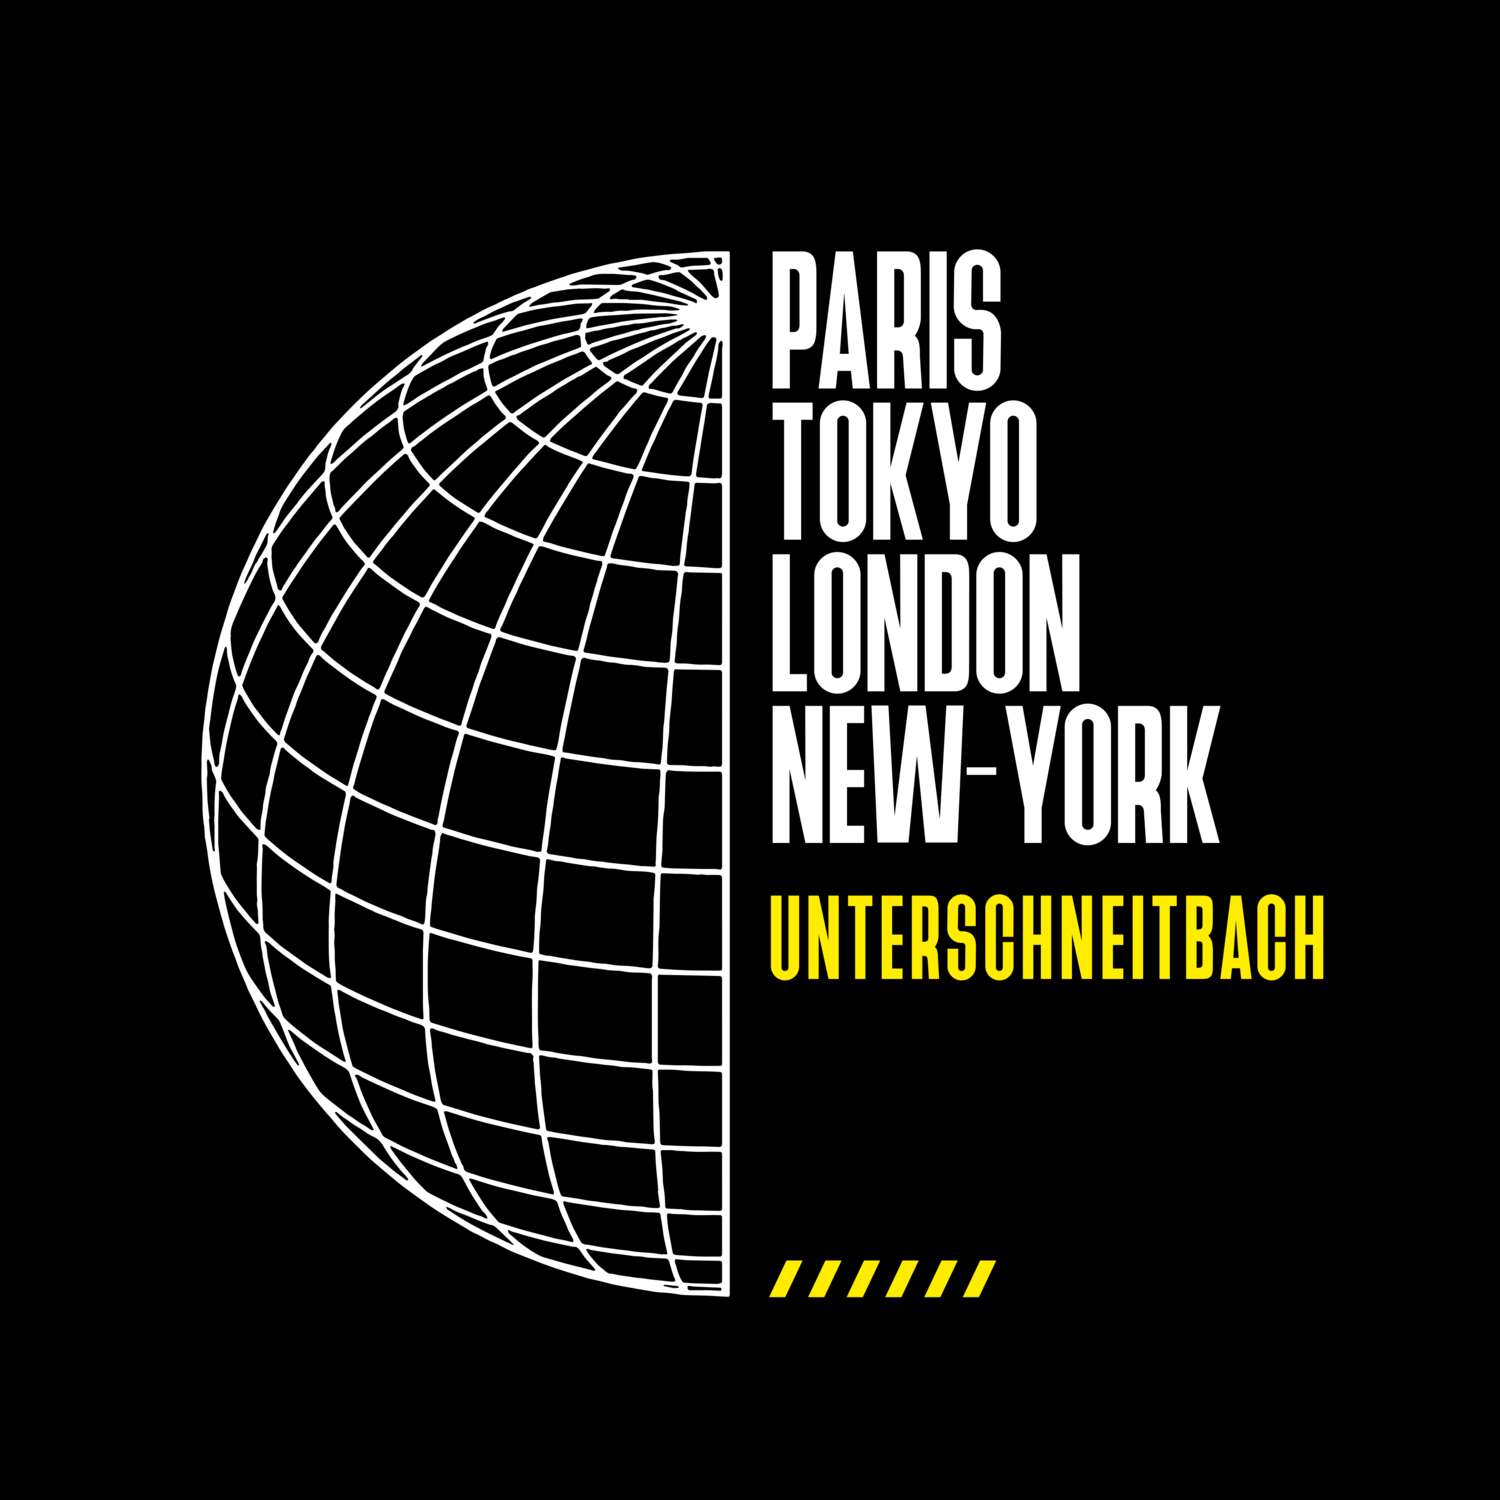 Unterschneitbach T-Shirt »Paris Tokyo London«